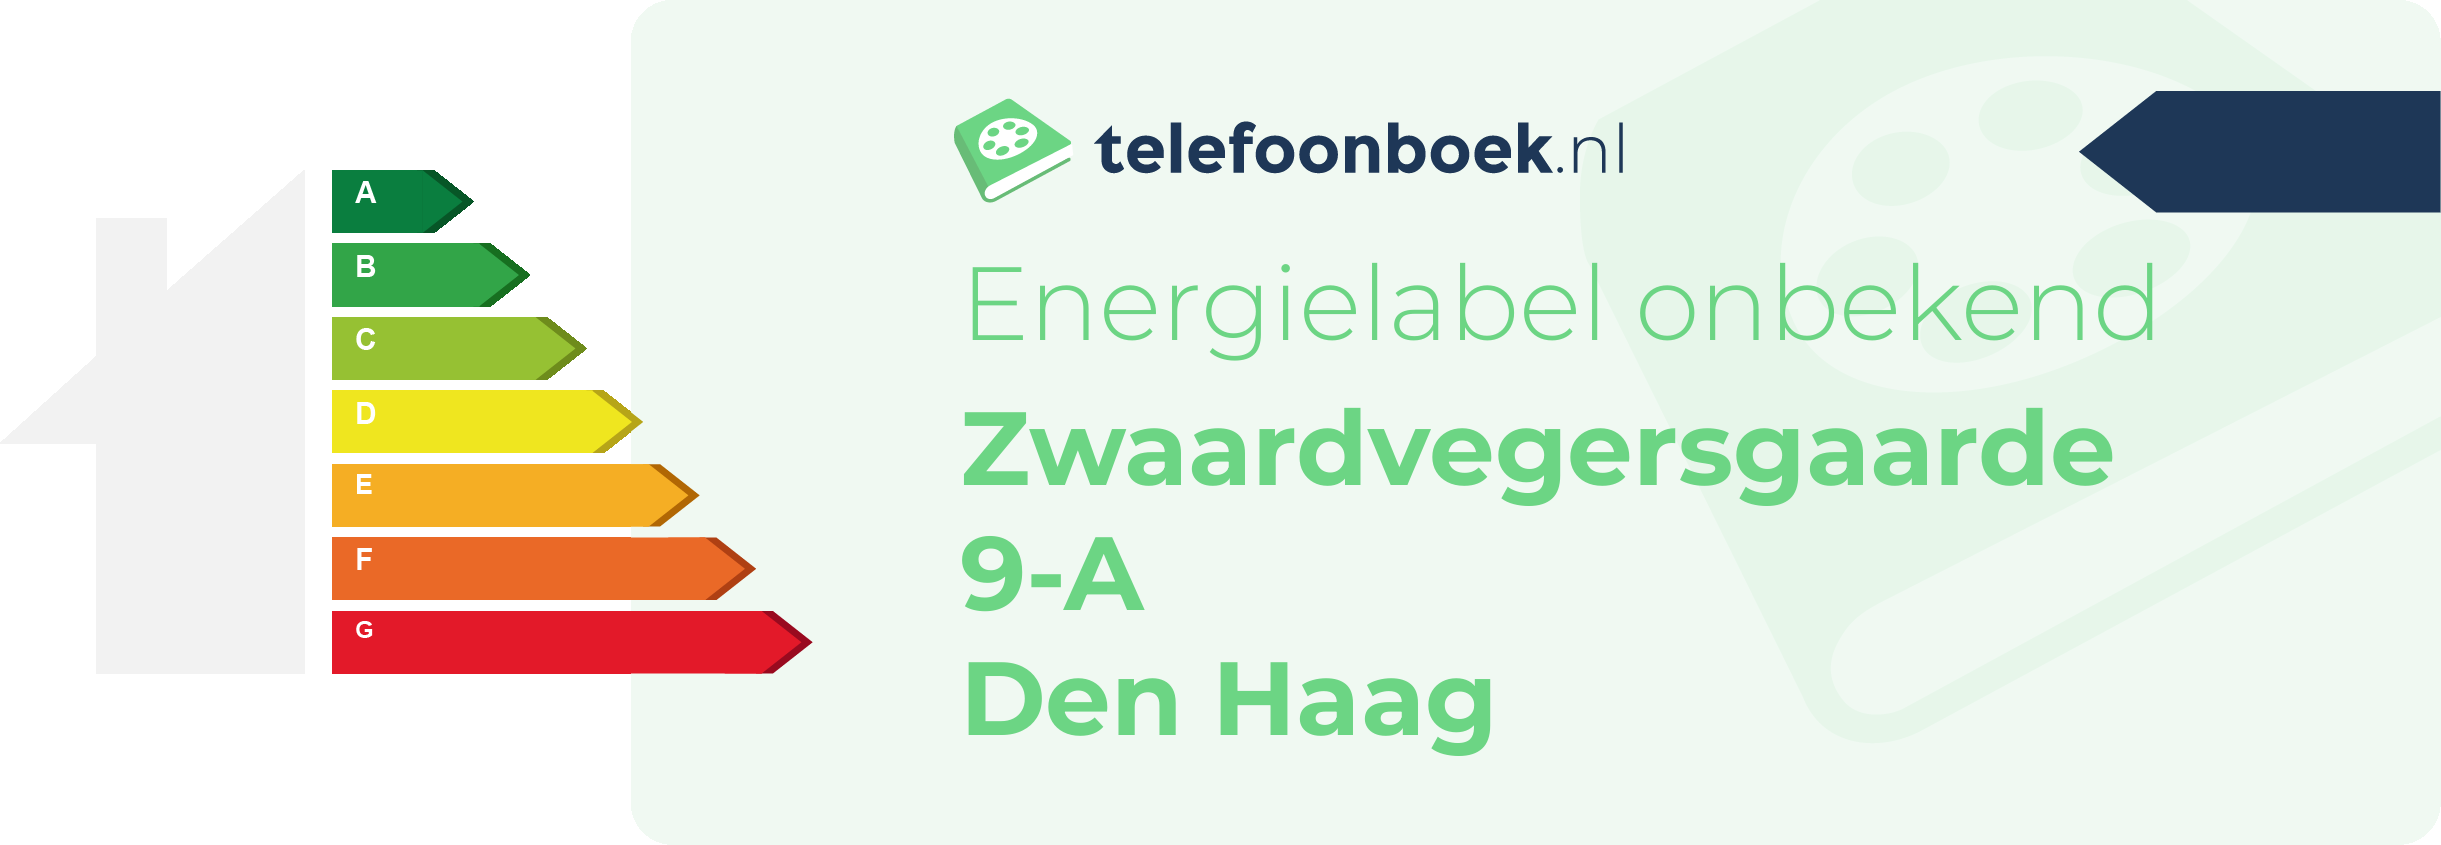 Energielabel Zwaardvegersgaarde 9-A Den Haag